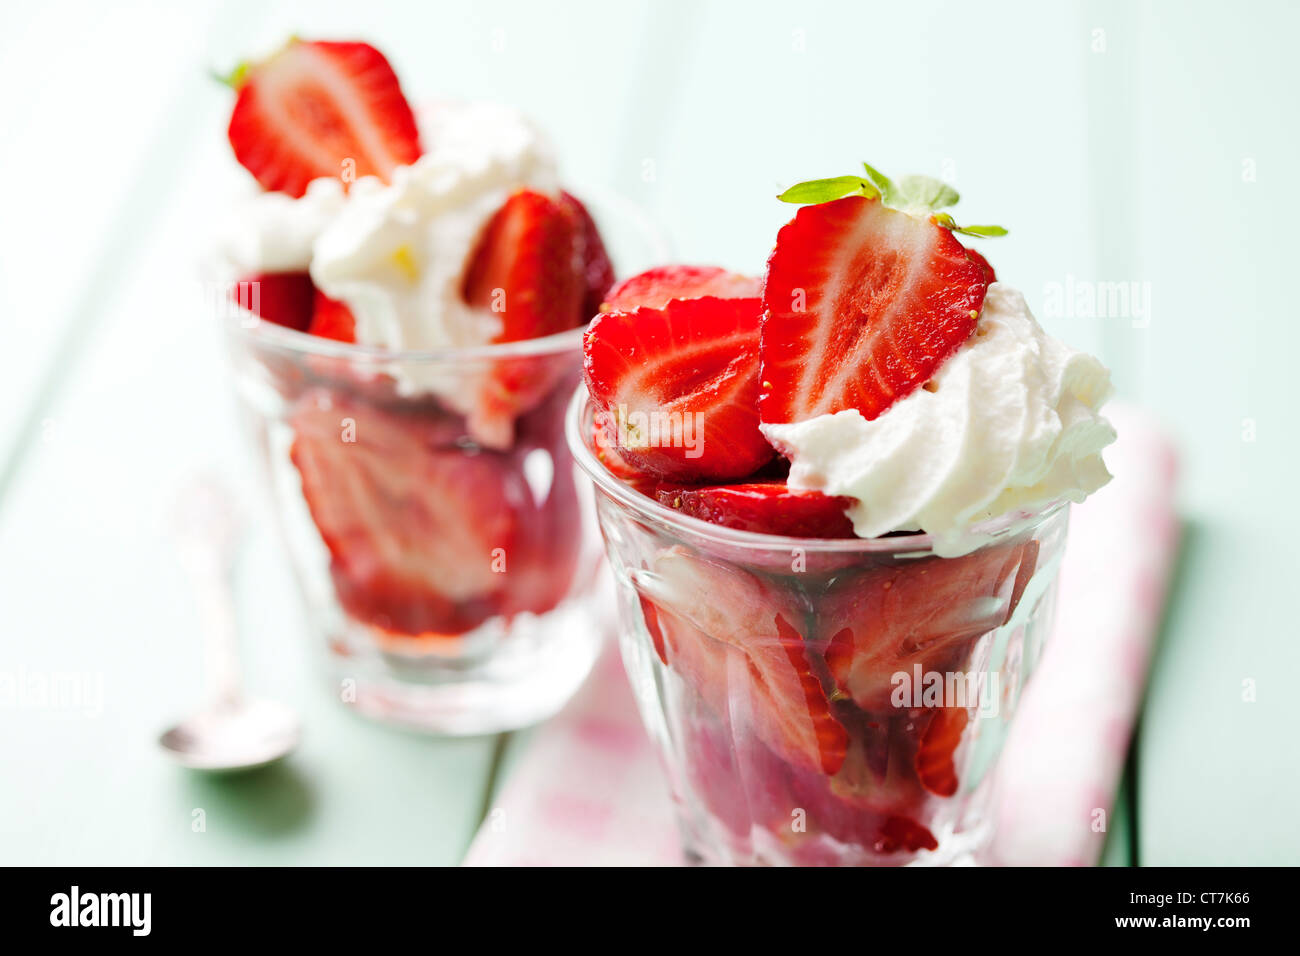 strawberries and cream Stock Photo